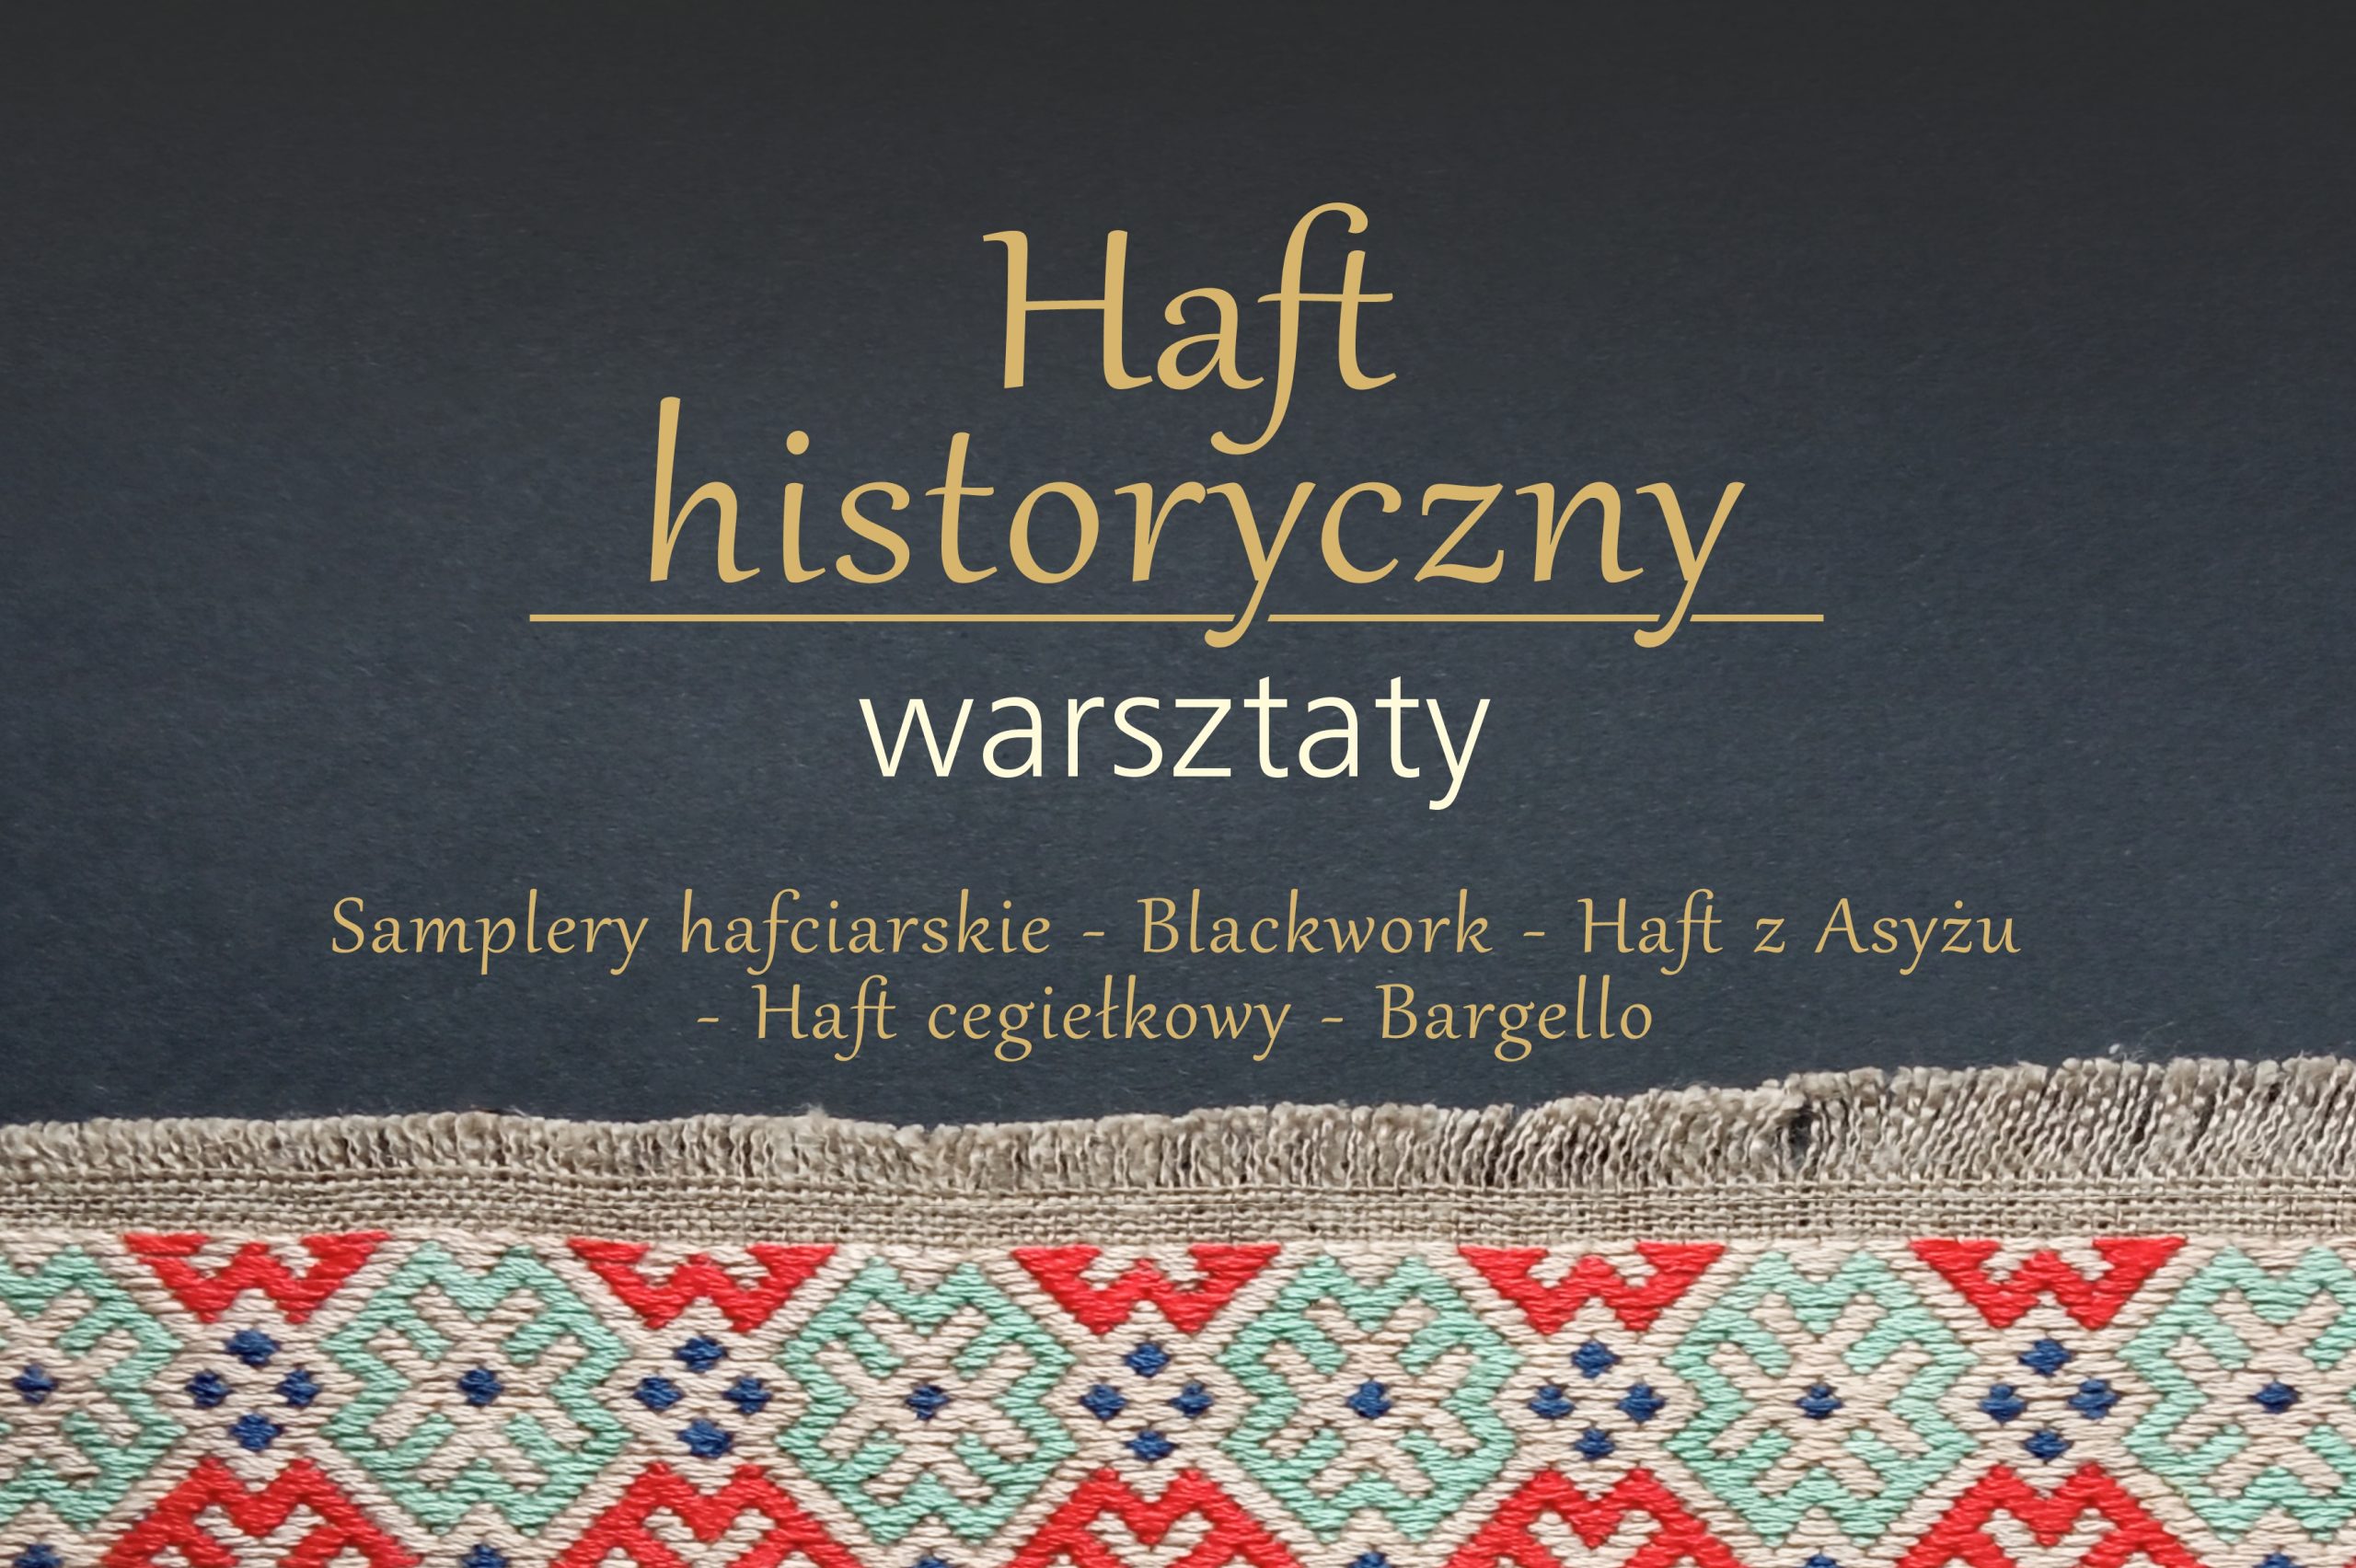 kolorowa grafika z napisem Haft historyczny warsztaty - reklamująca warsztaty w muzeum